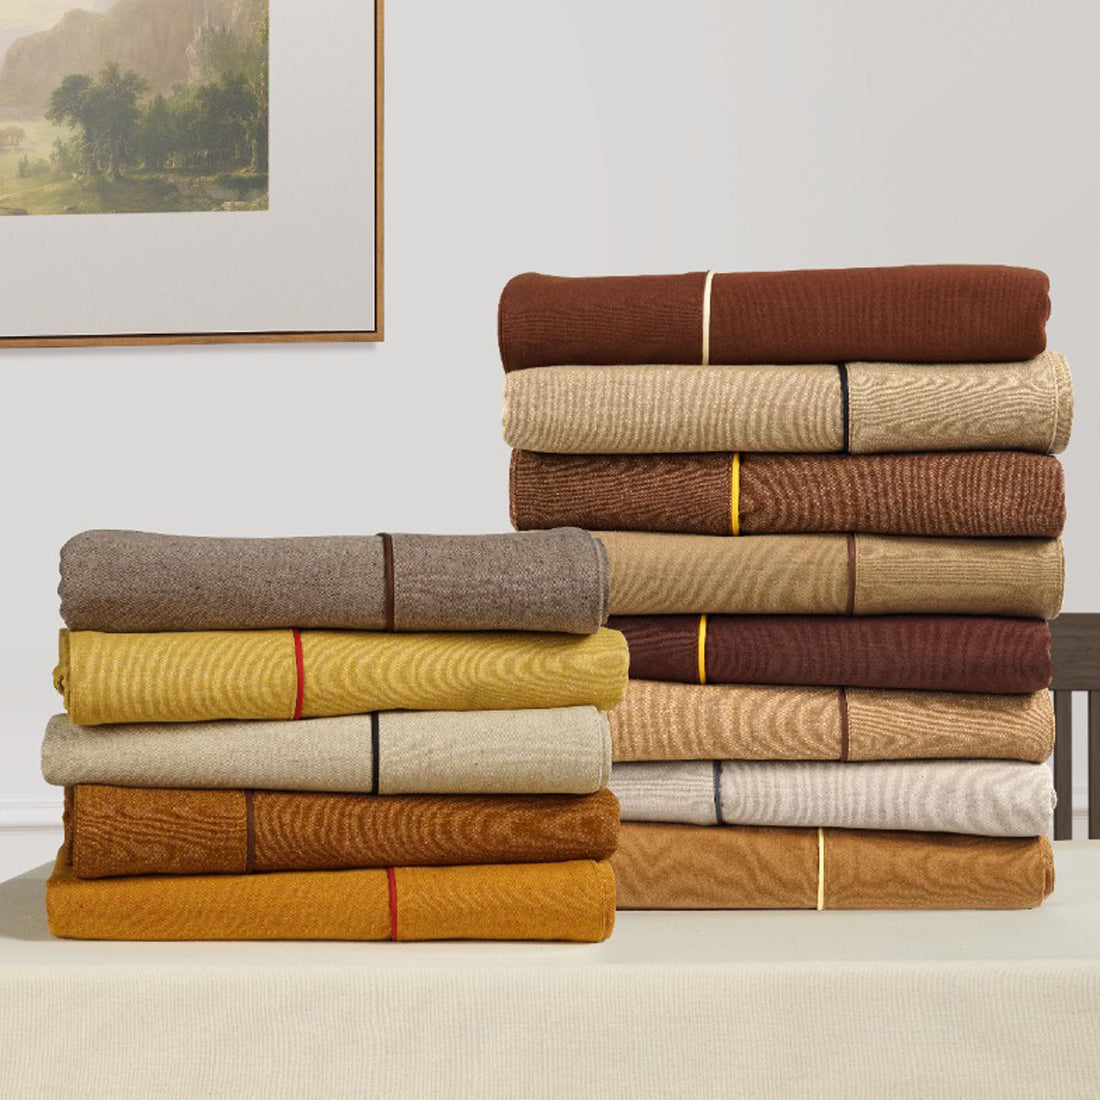 VIRGO Woven Cotton Plain Table Cover - Camel Brown